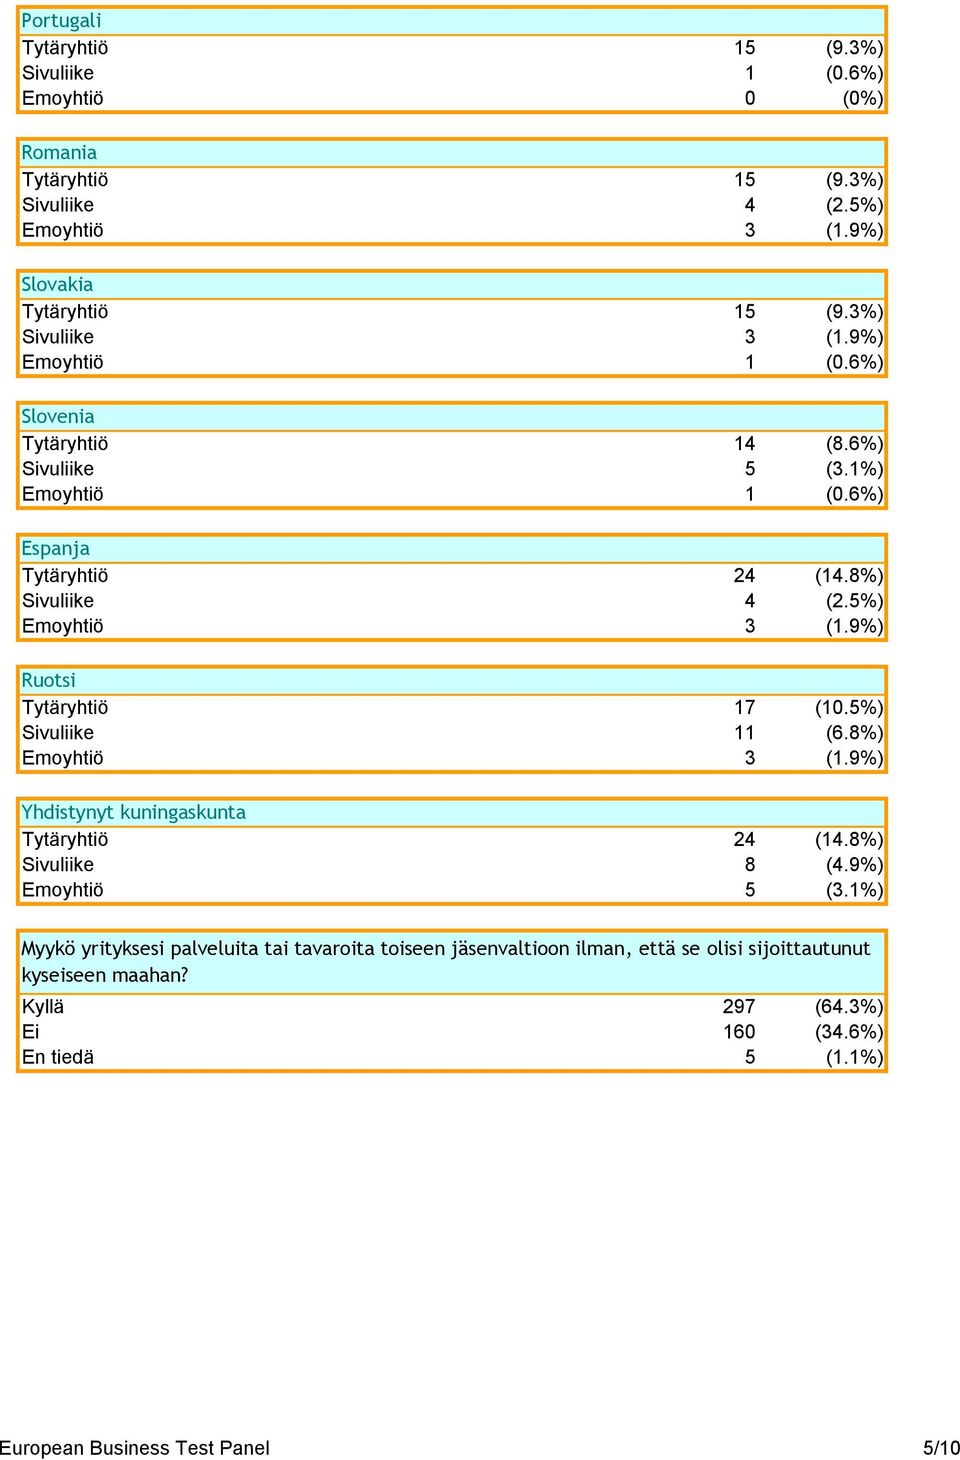 9%) Ruotsi Tytäryhtiö 17 (10.5%) Sivuliike 11 (6.8%) Emoyhtiö 3 (1.9%) Yhdistynyt kuningaskunta Tytäryhtiö 24 (14.8%) Sivuliike 8 (4.9%) Emoyhtiö 5 (3.